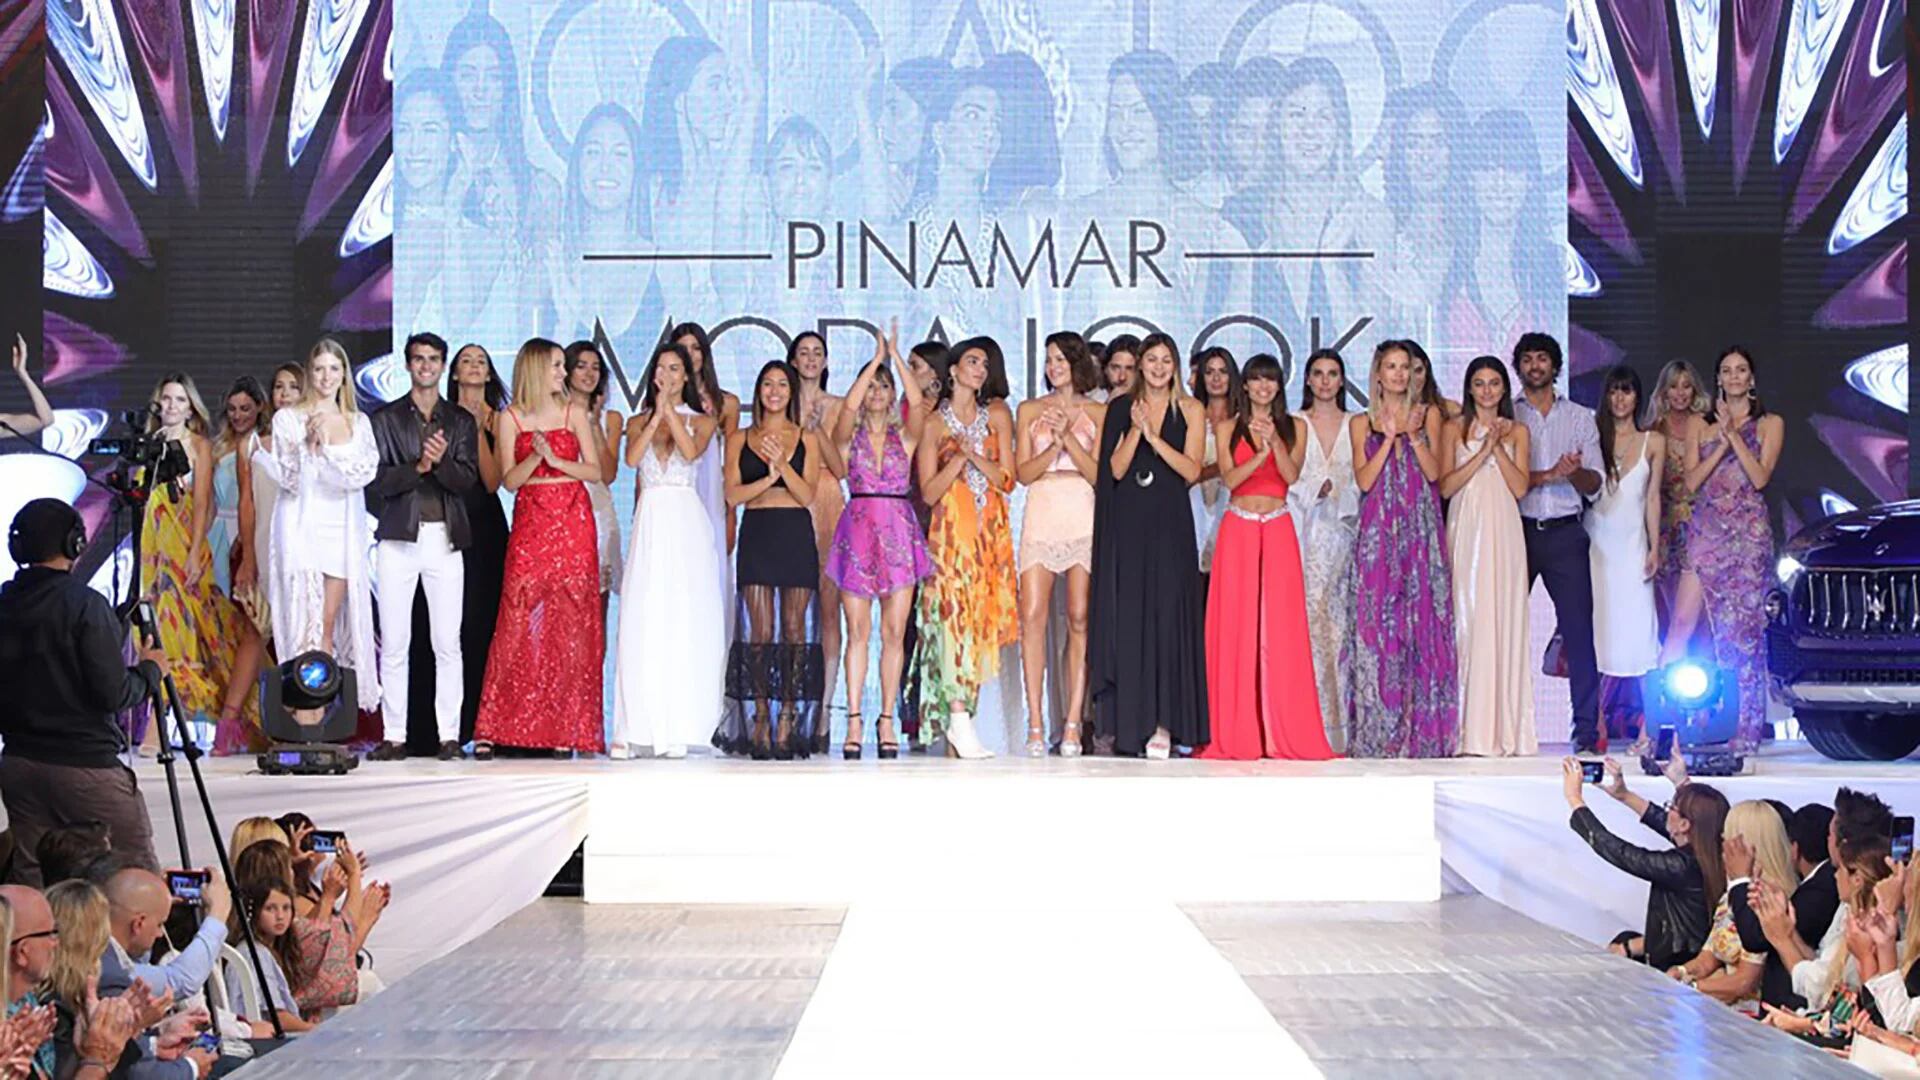 Resumen del desfile de Moda Look en Pinamar